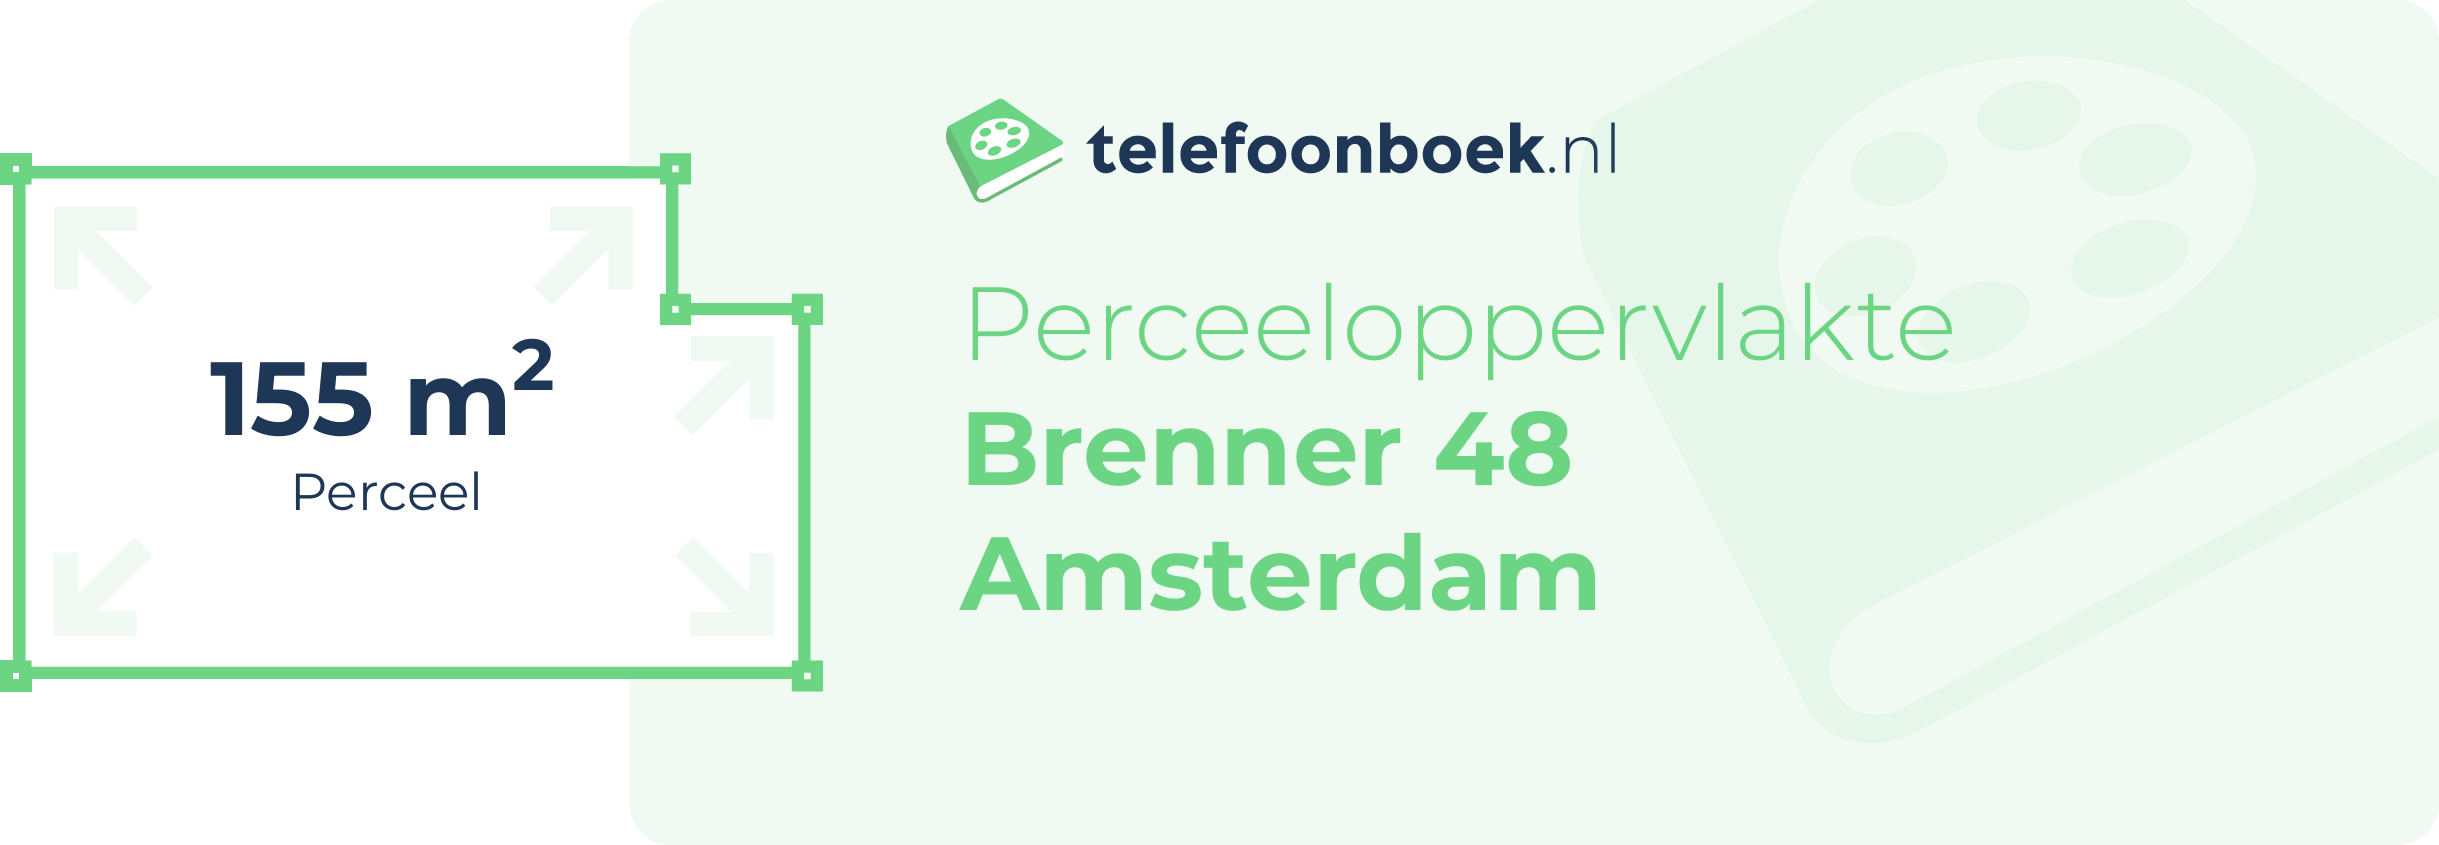 Perceeloppervlakte Brenner 48 Amsterdam